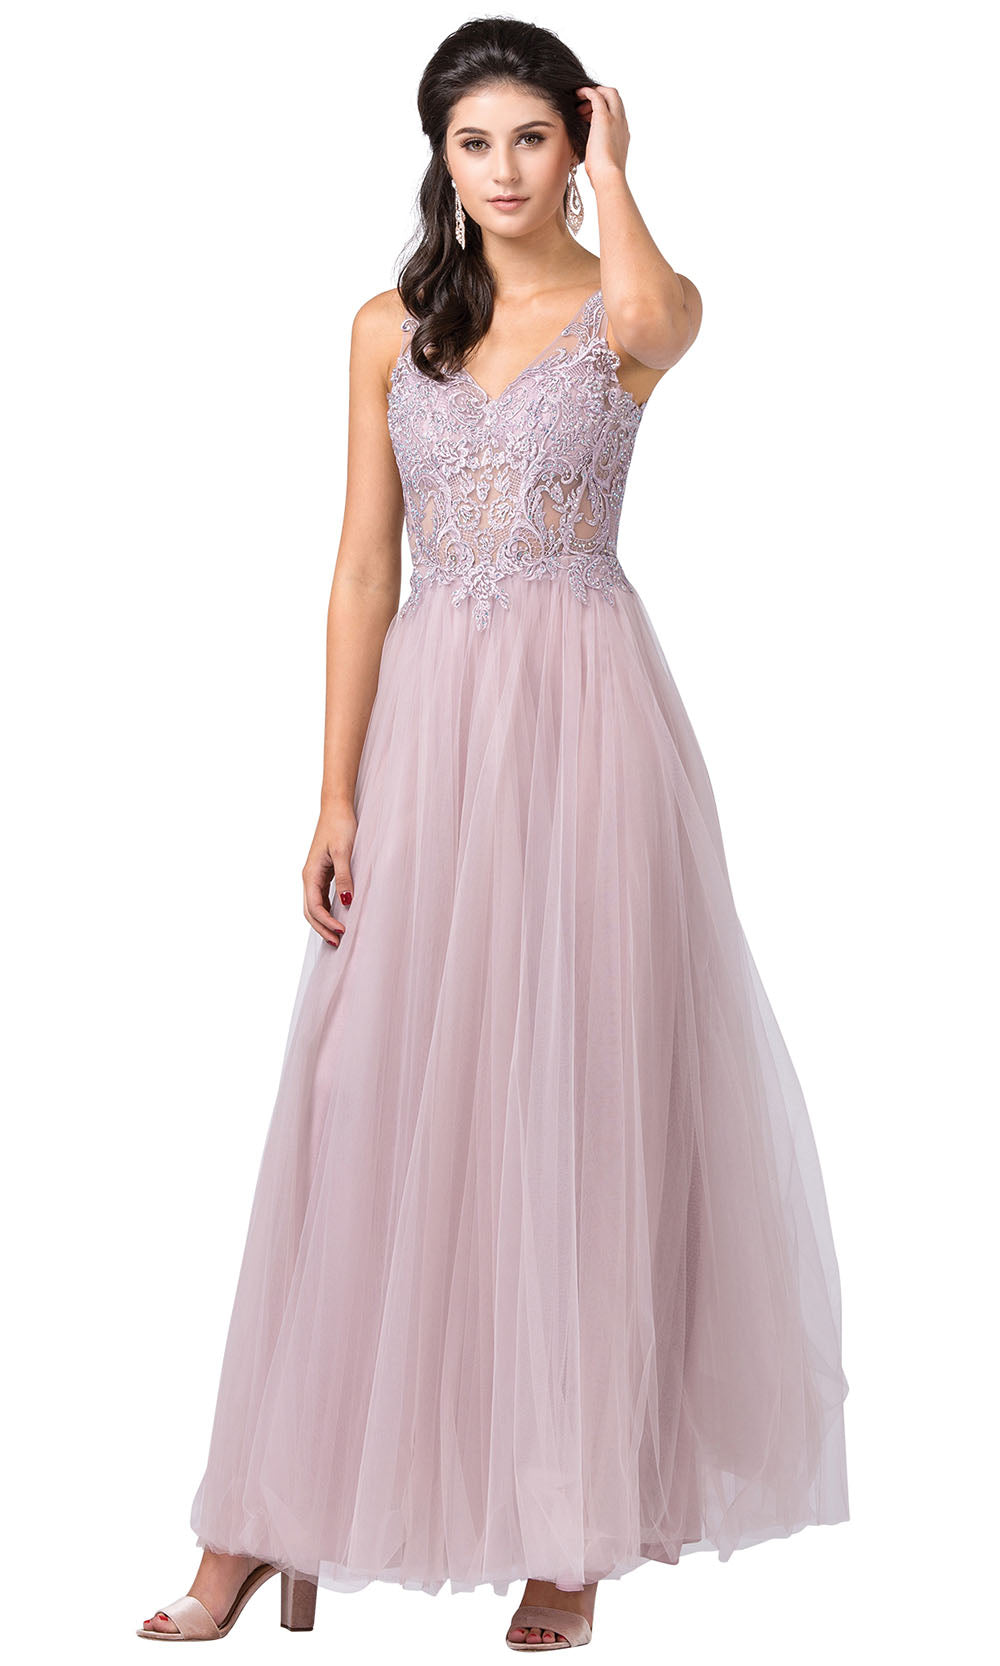 Dancing Queen - 2511 Sheer Floral Appliqued A-Line Dress In Pink